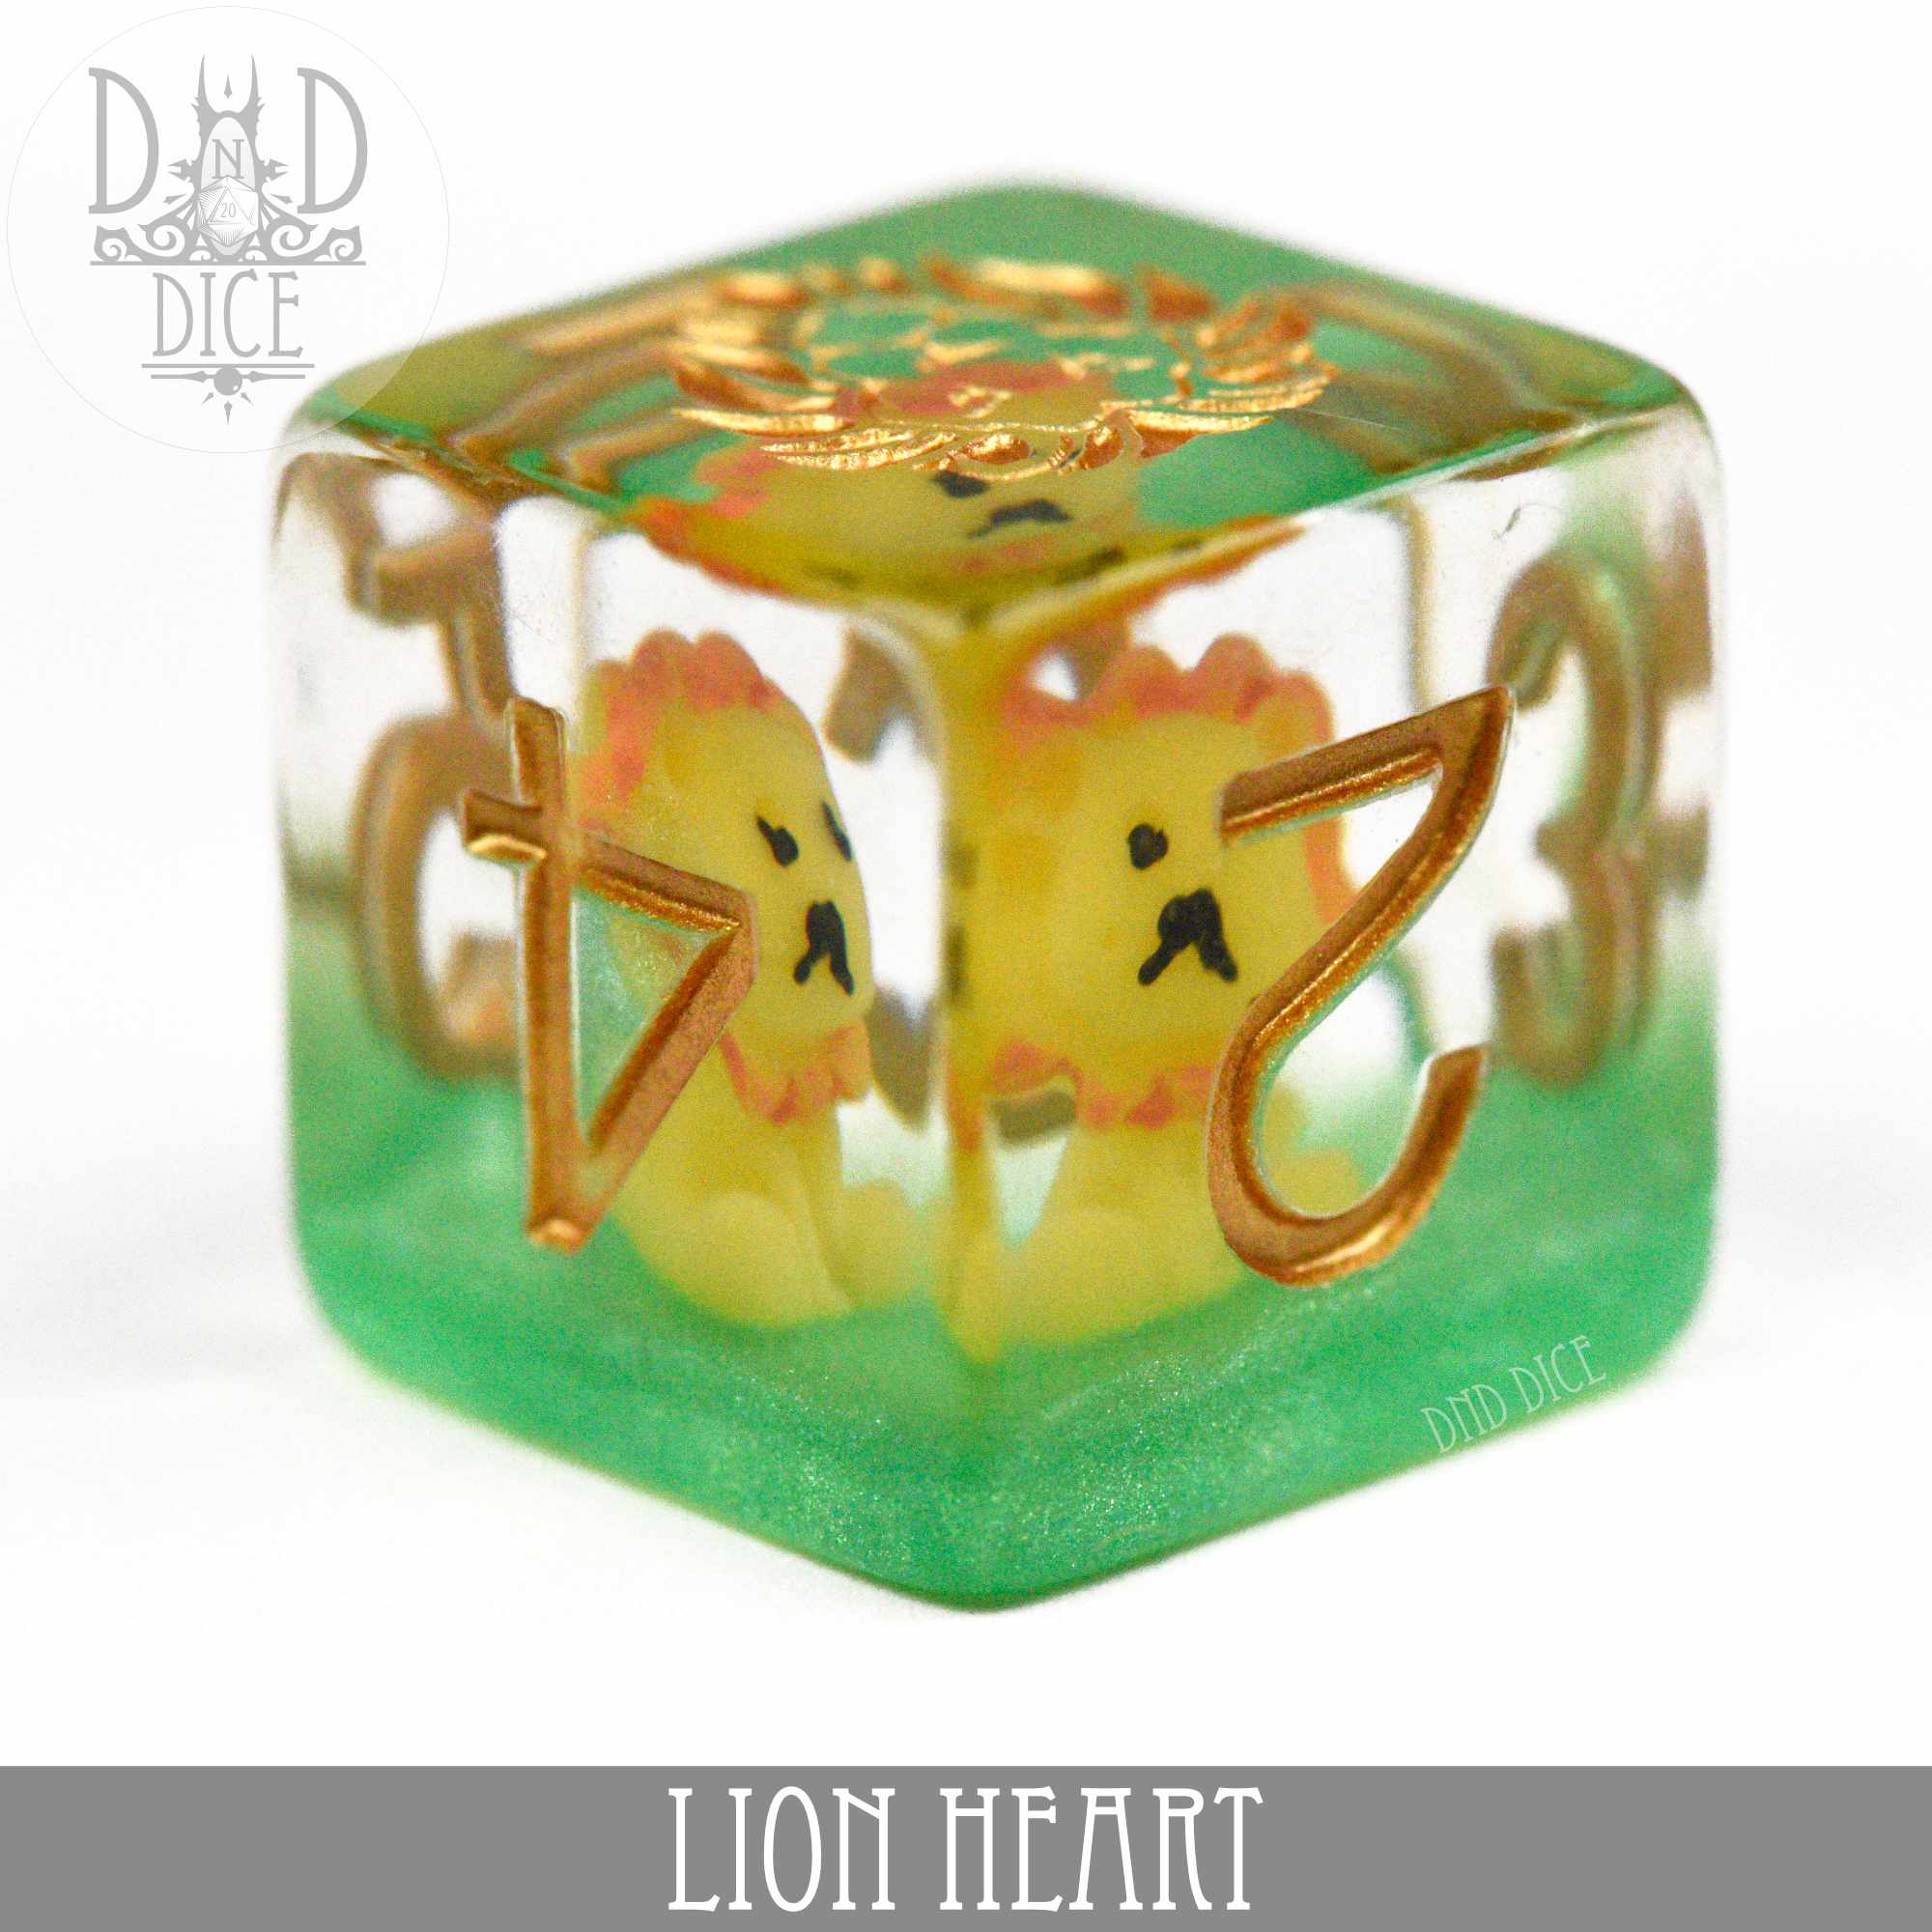 Lion Heart 7 dice set